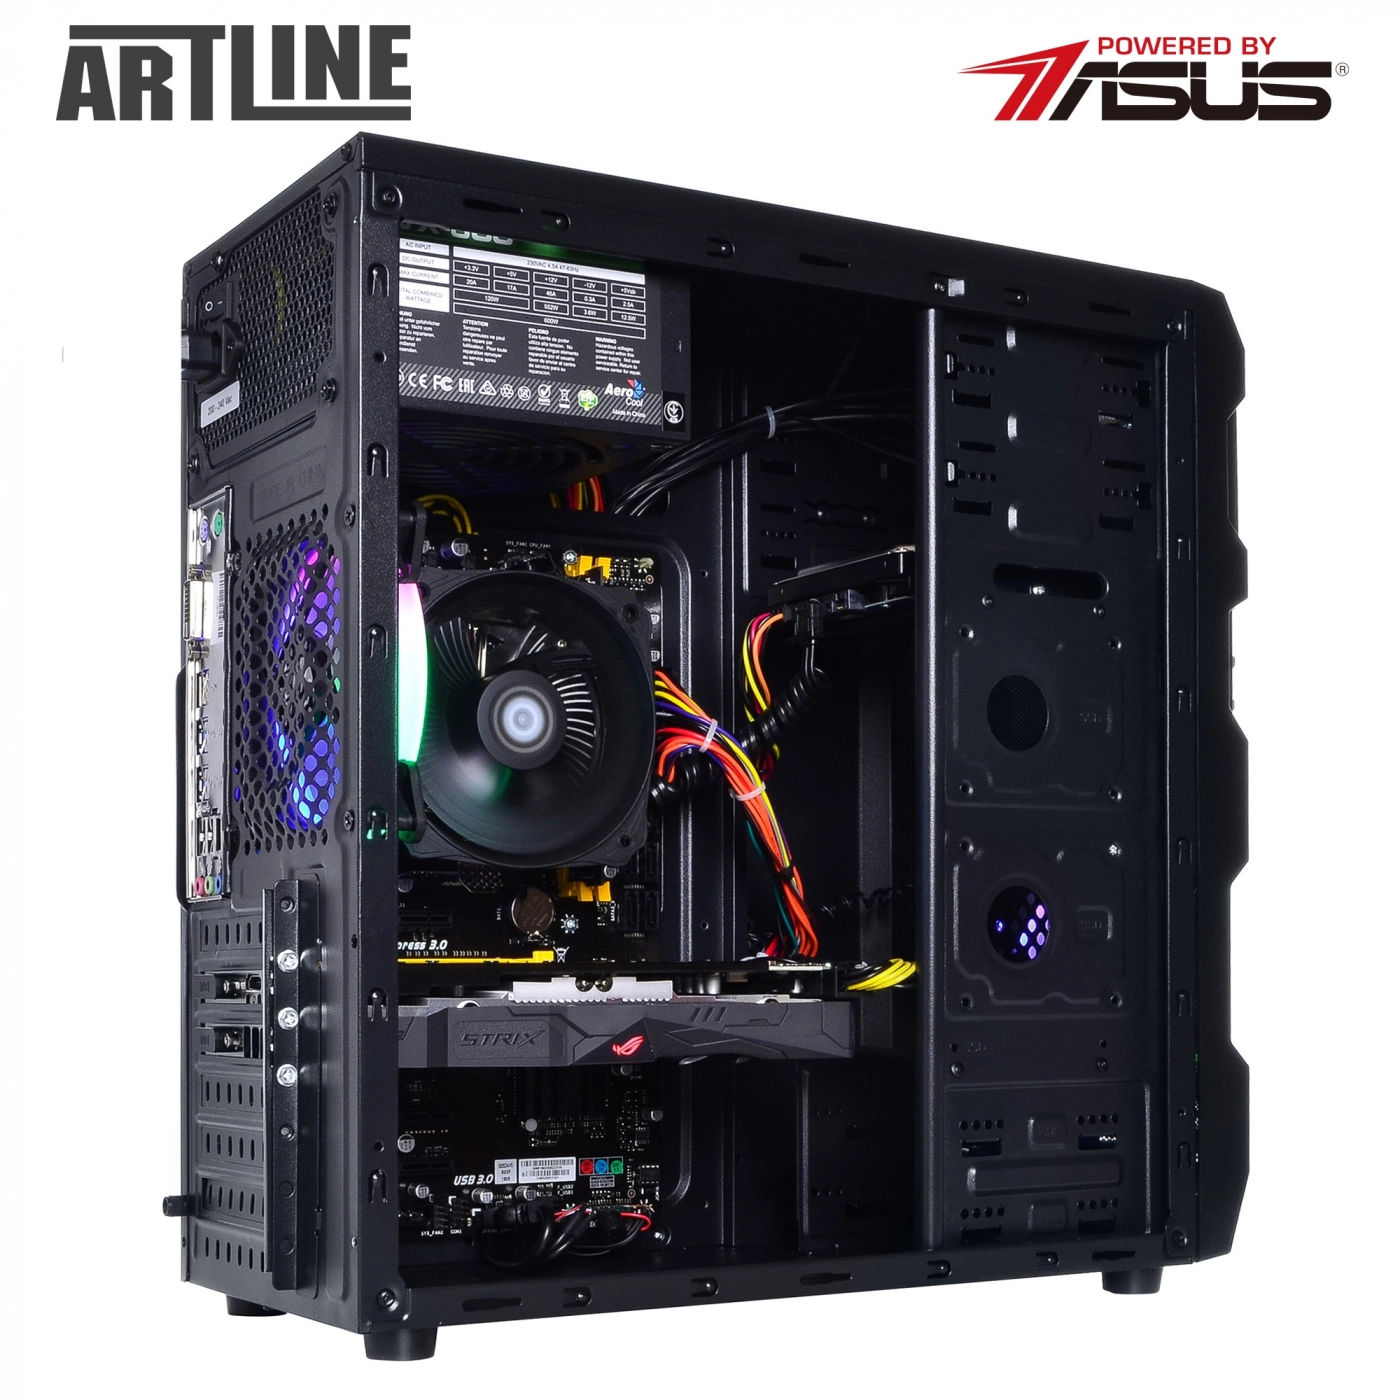 Купить Компьютер ARTLINE Gaming X47v35 - фото 9